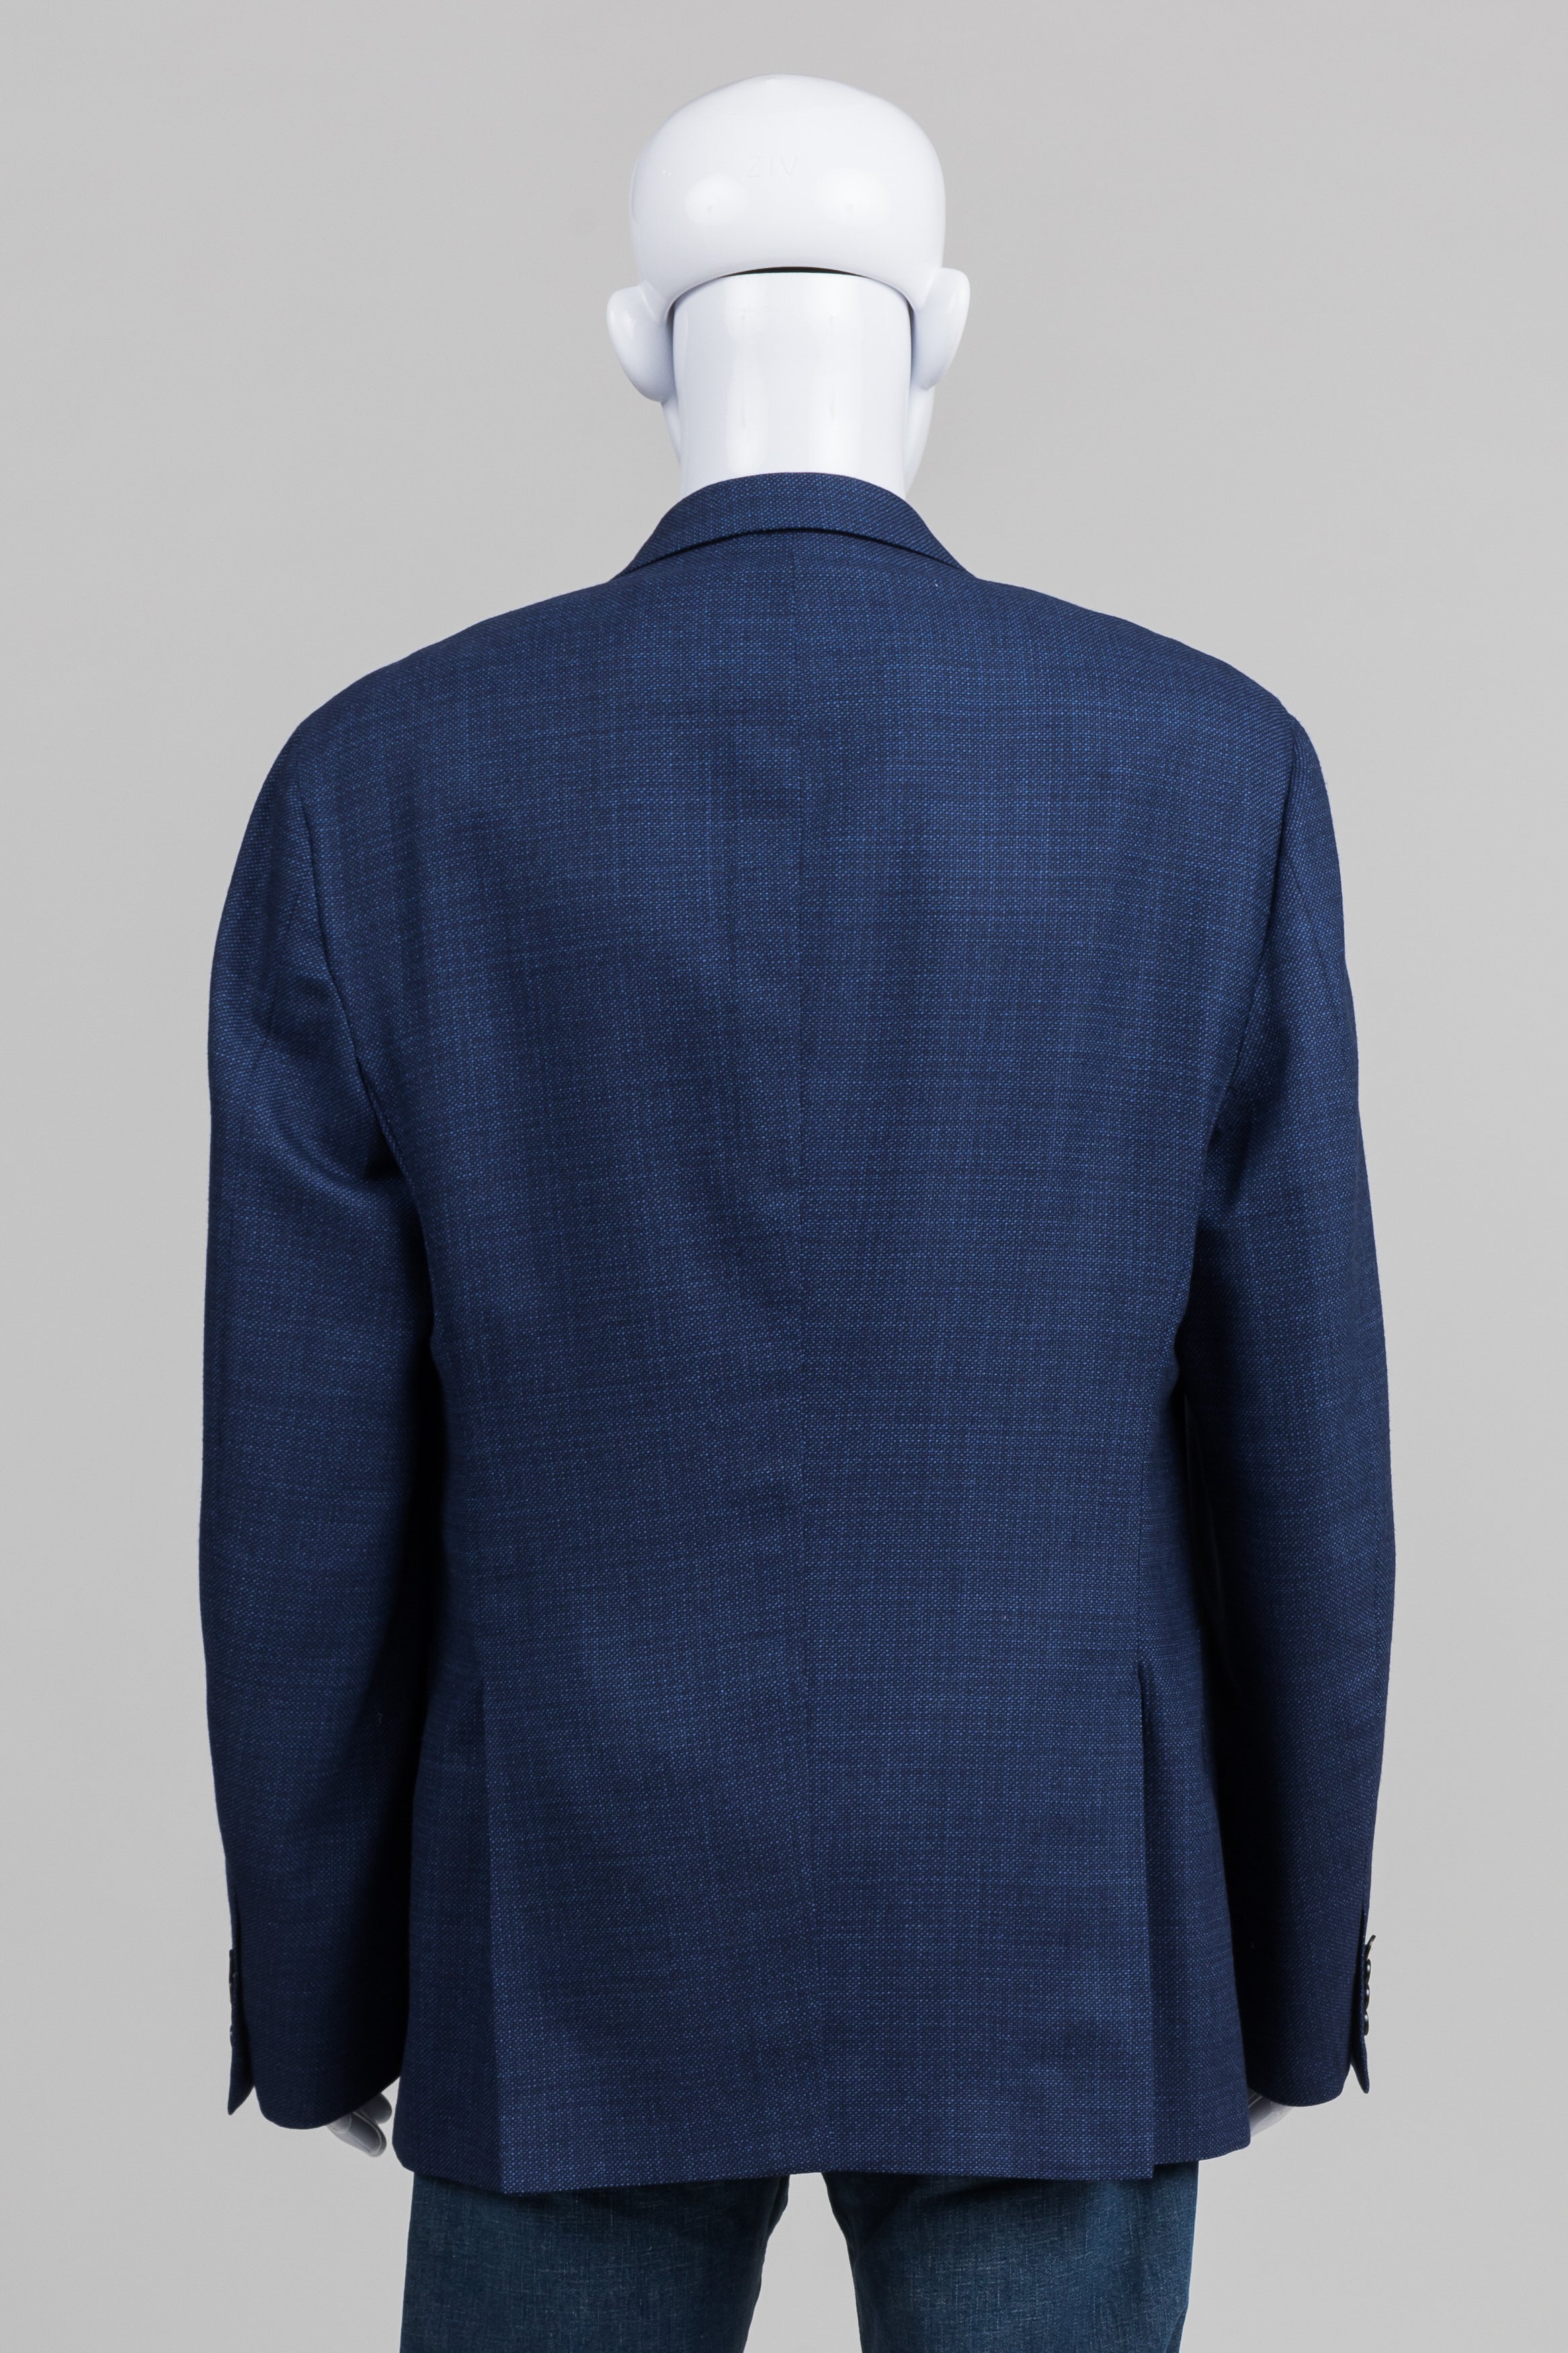 J.P. Tilford for Harry Rosen blue tweed blazer (48)